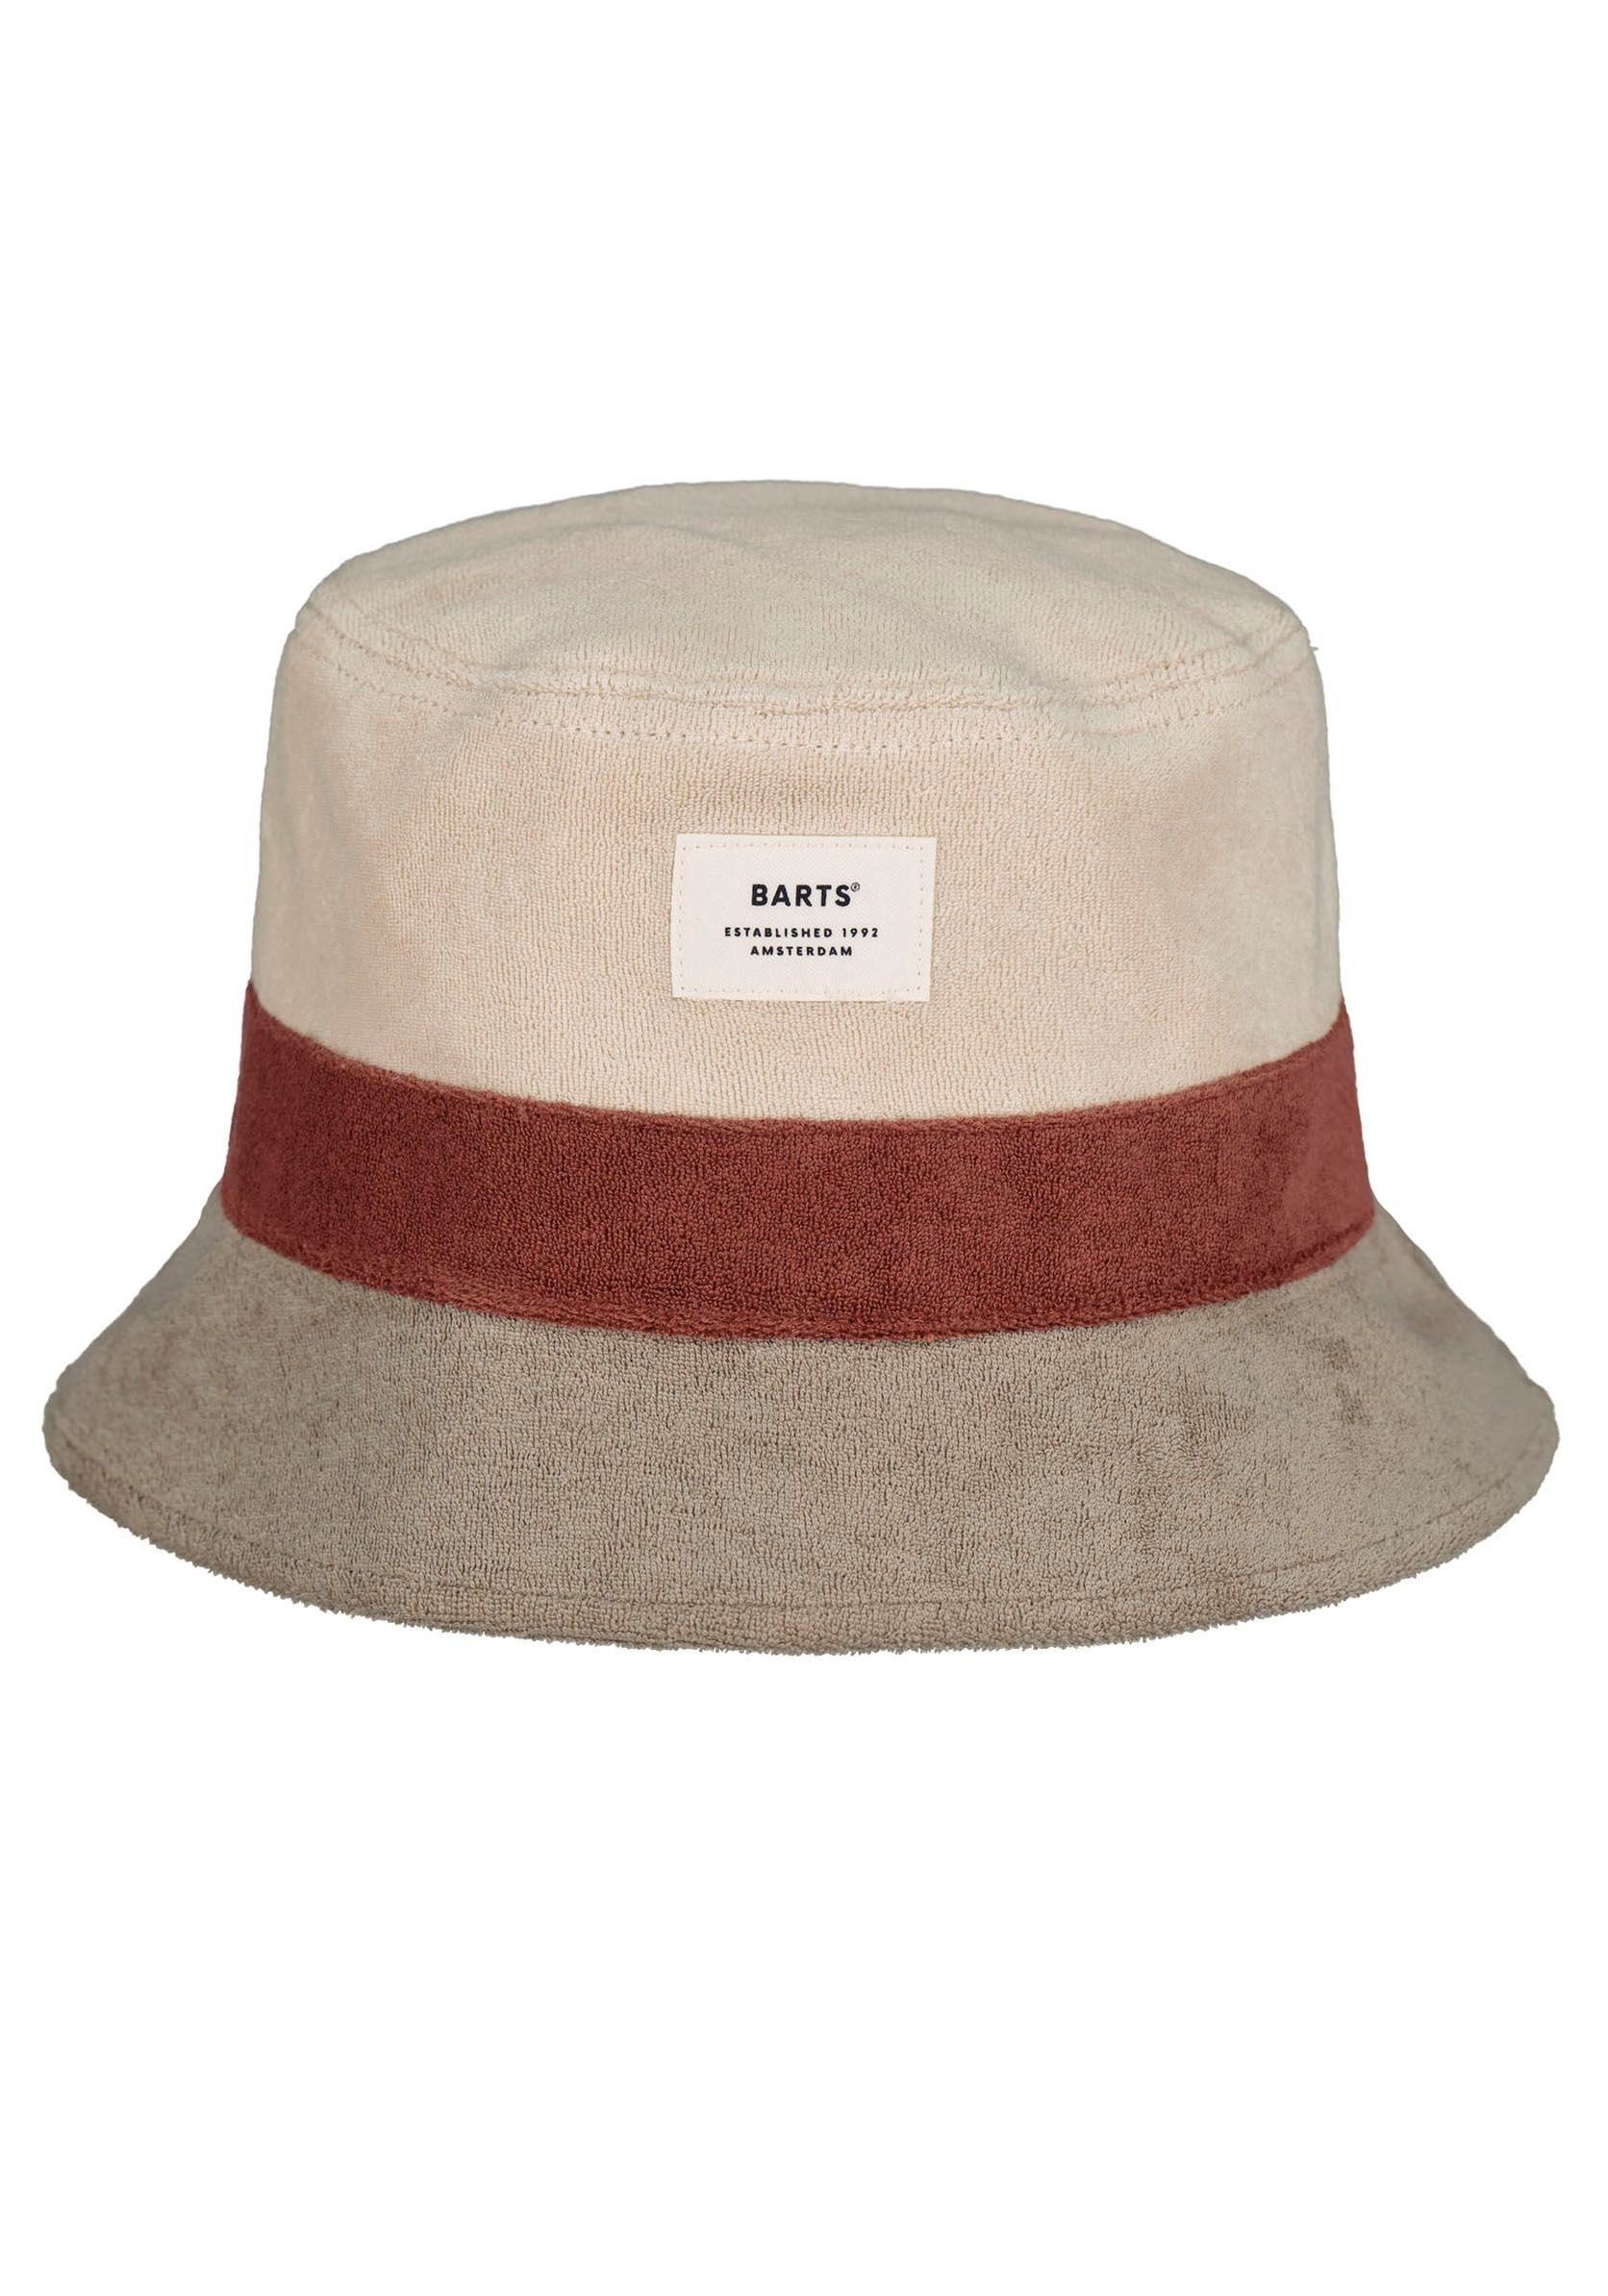 Fischerhut weicher Barts Hut Damen Hat, Gladiola Moderner